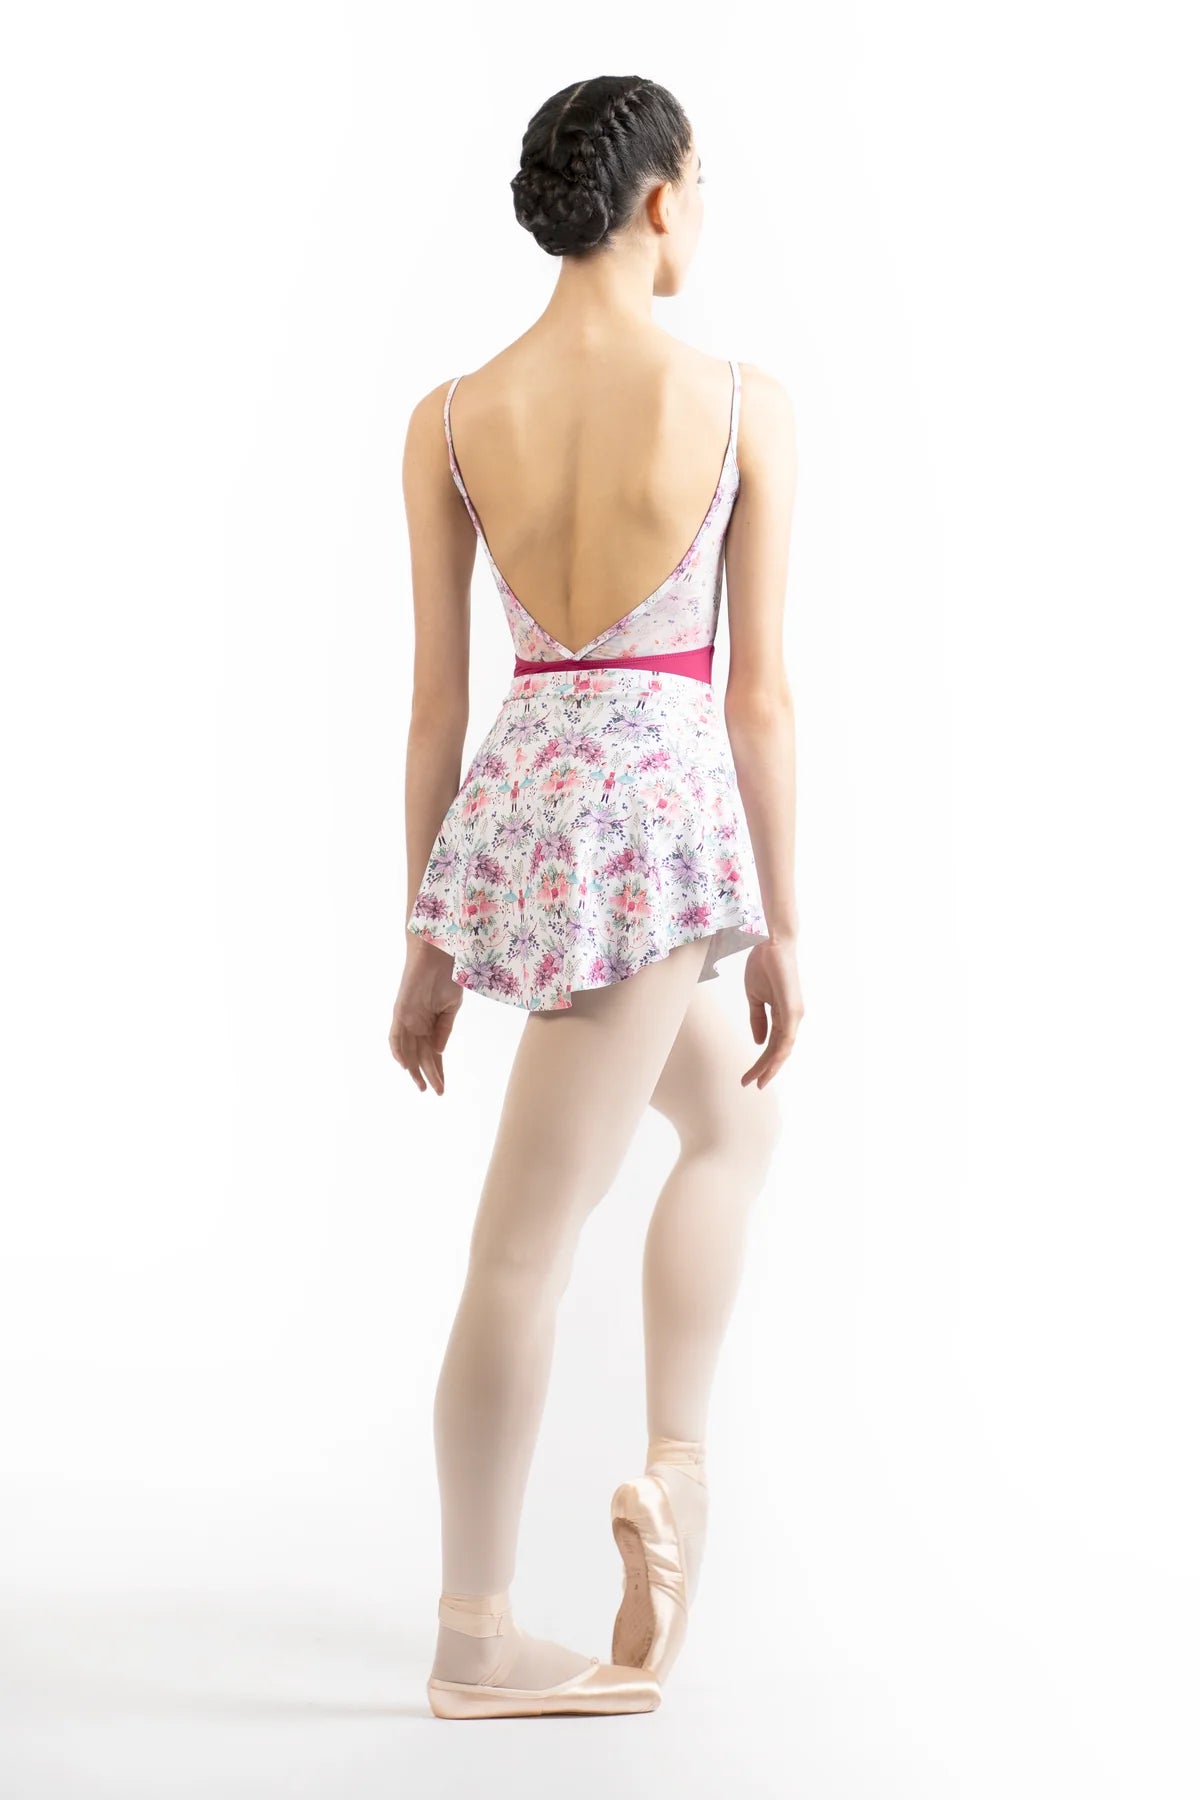 Danse De Paris Skirt in Nutcracker Pattern - XXSA/XSA